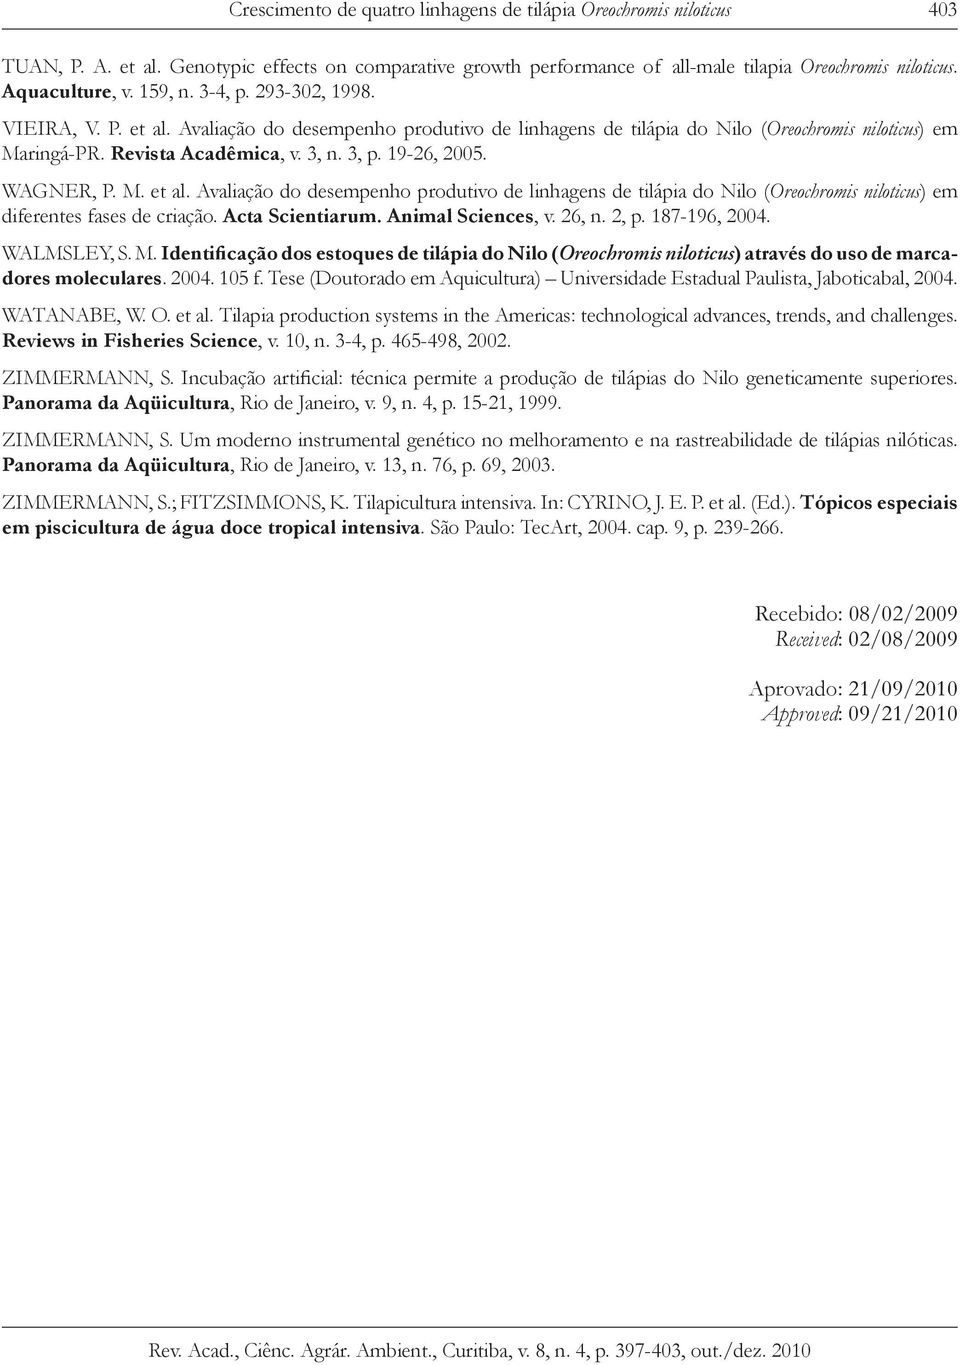 19-26, 2005. WAGNER, P. M. et al. Avaliação do desempenho produtivo de linhagens de tilápia do Nilo (Oreochromis niloticus) em diferentes fases de criação. Acta Scientiarum. Animal Sciences, v. 26, n.